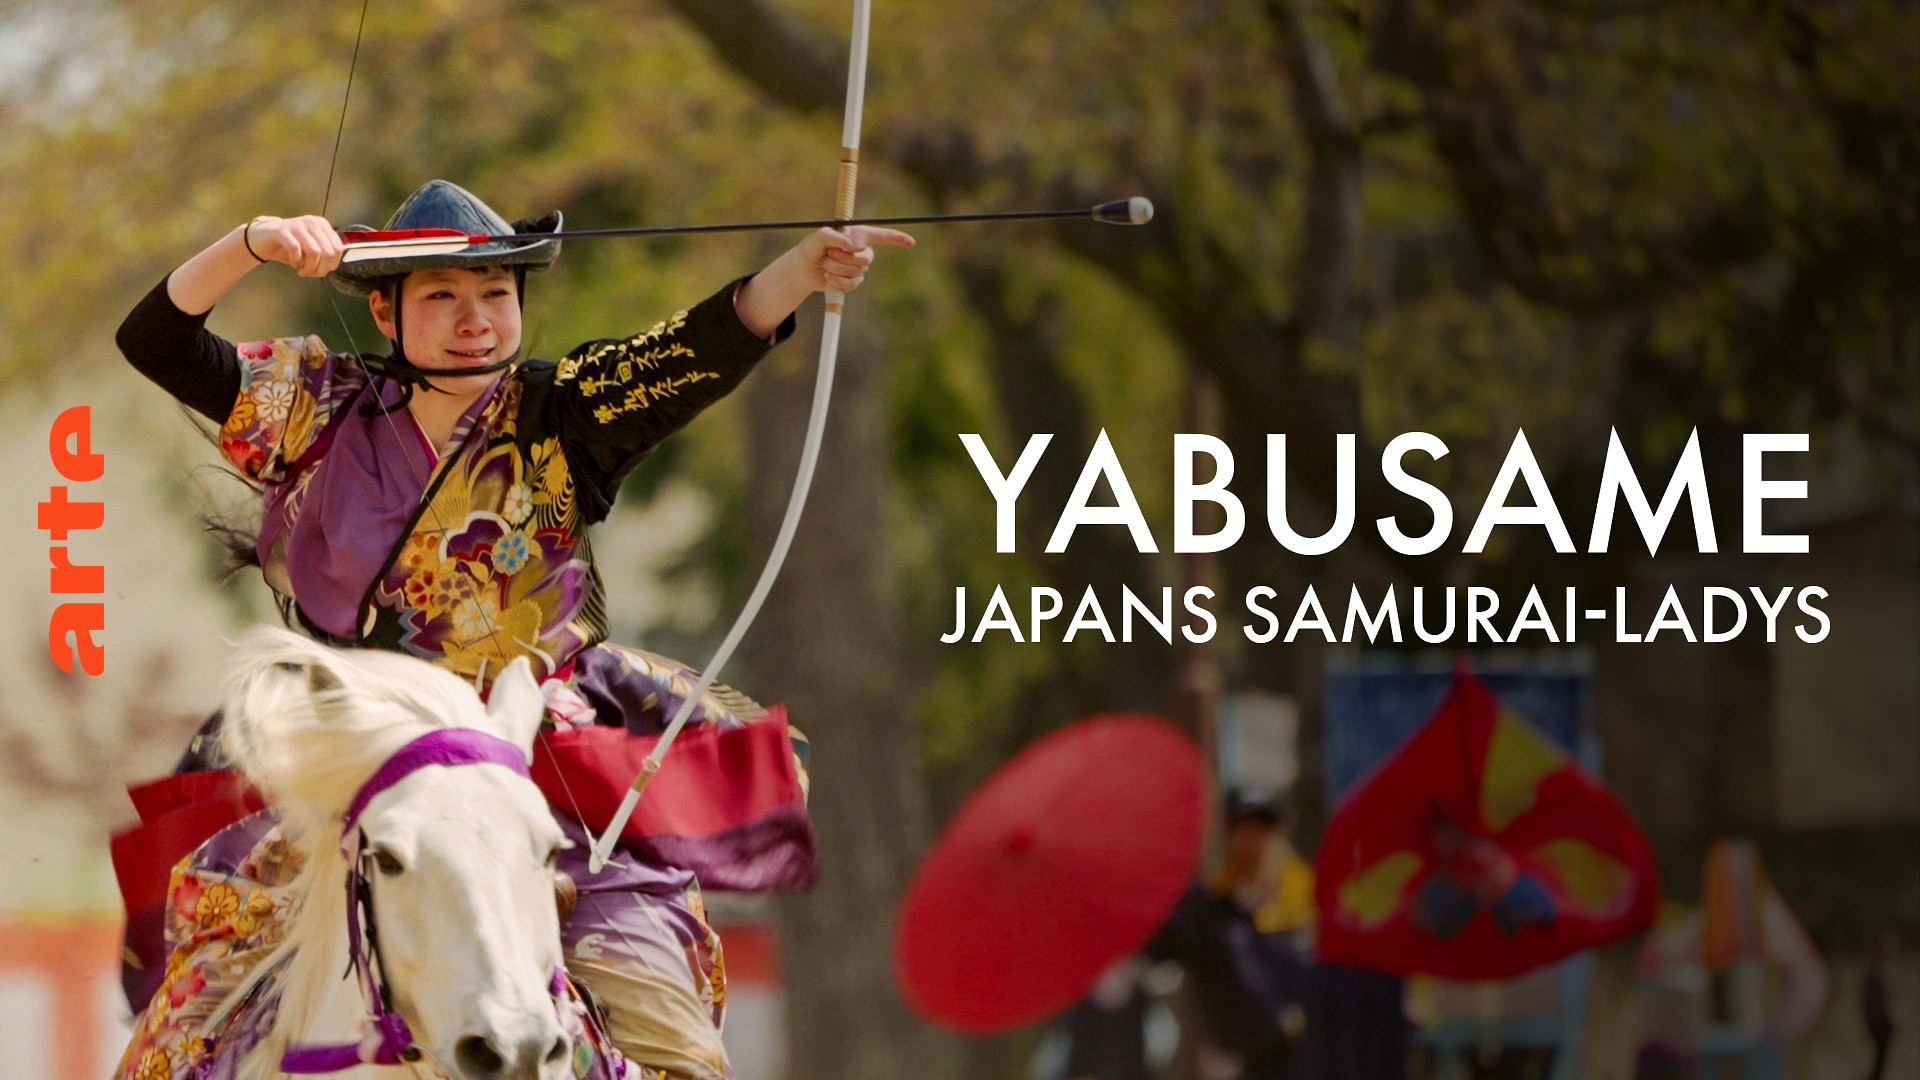 Yabusame: Japans Samurai-Ladys